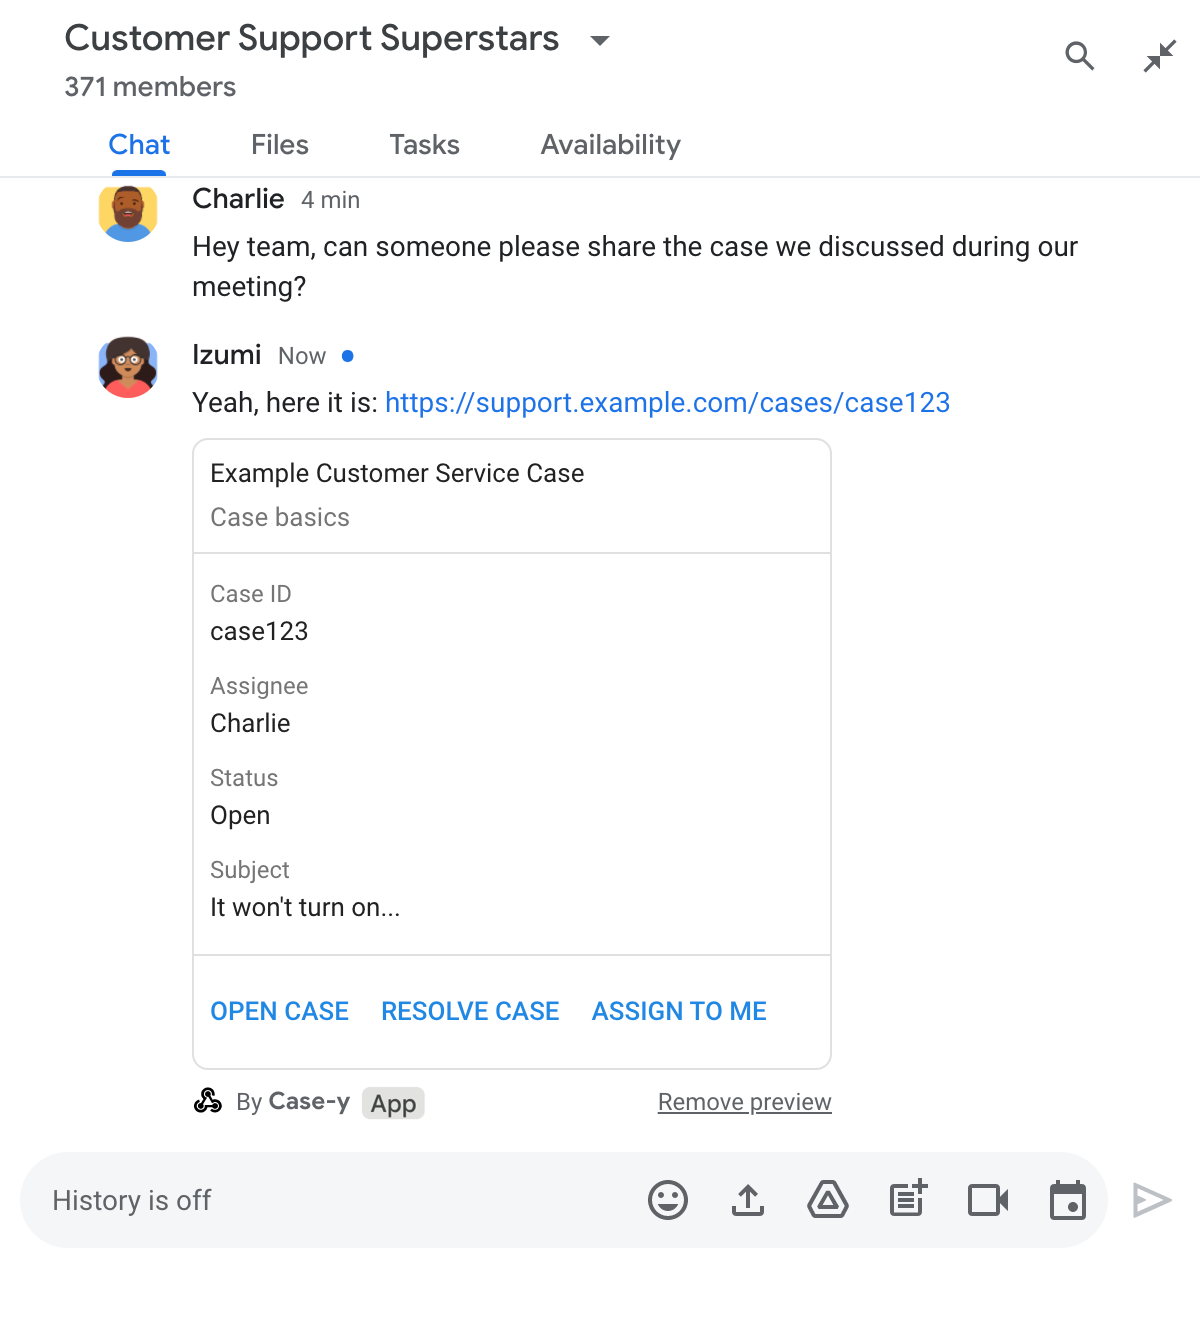 Mesaja kart ekleyerek bağlantıyı önizleyen Chat uygulaması